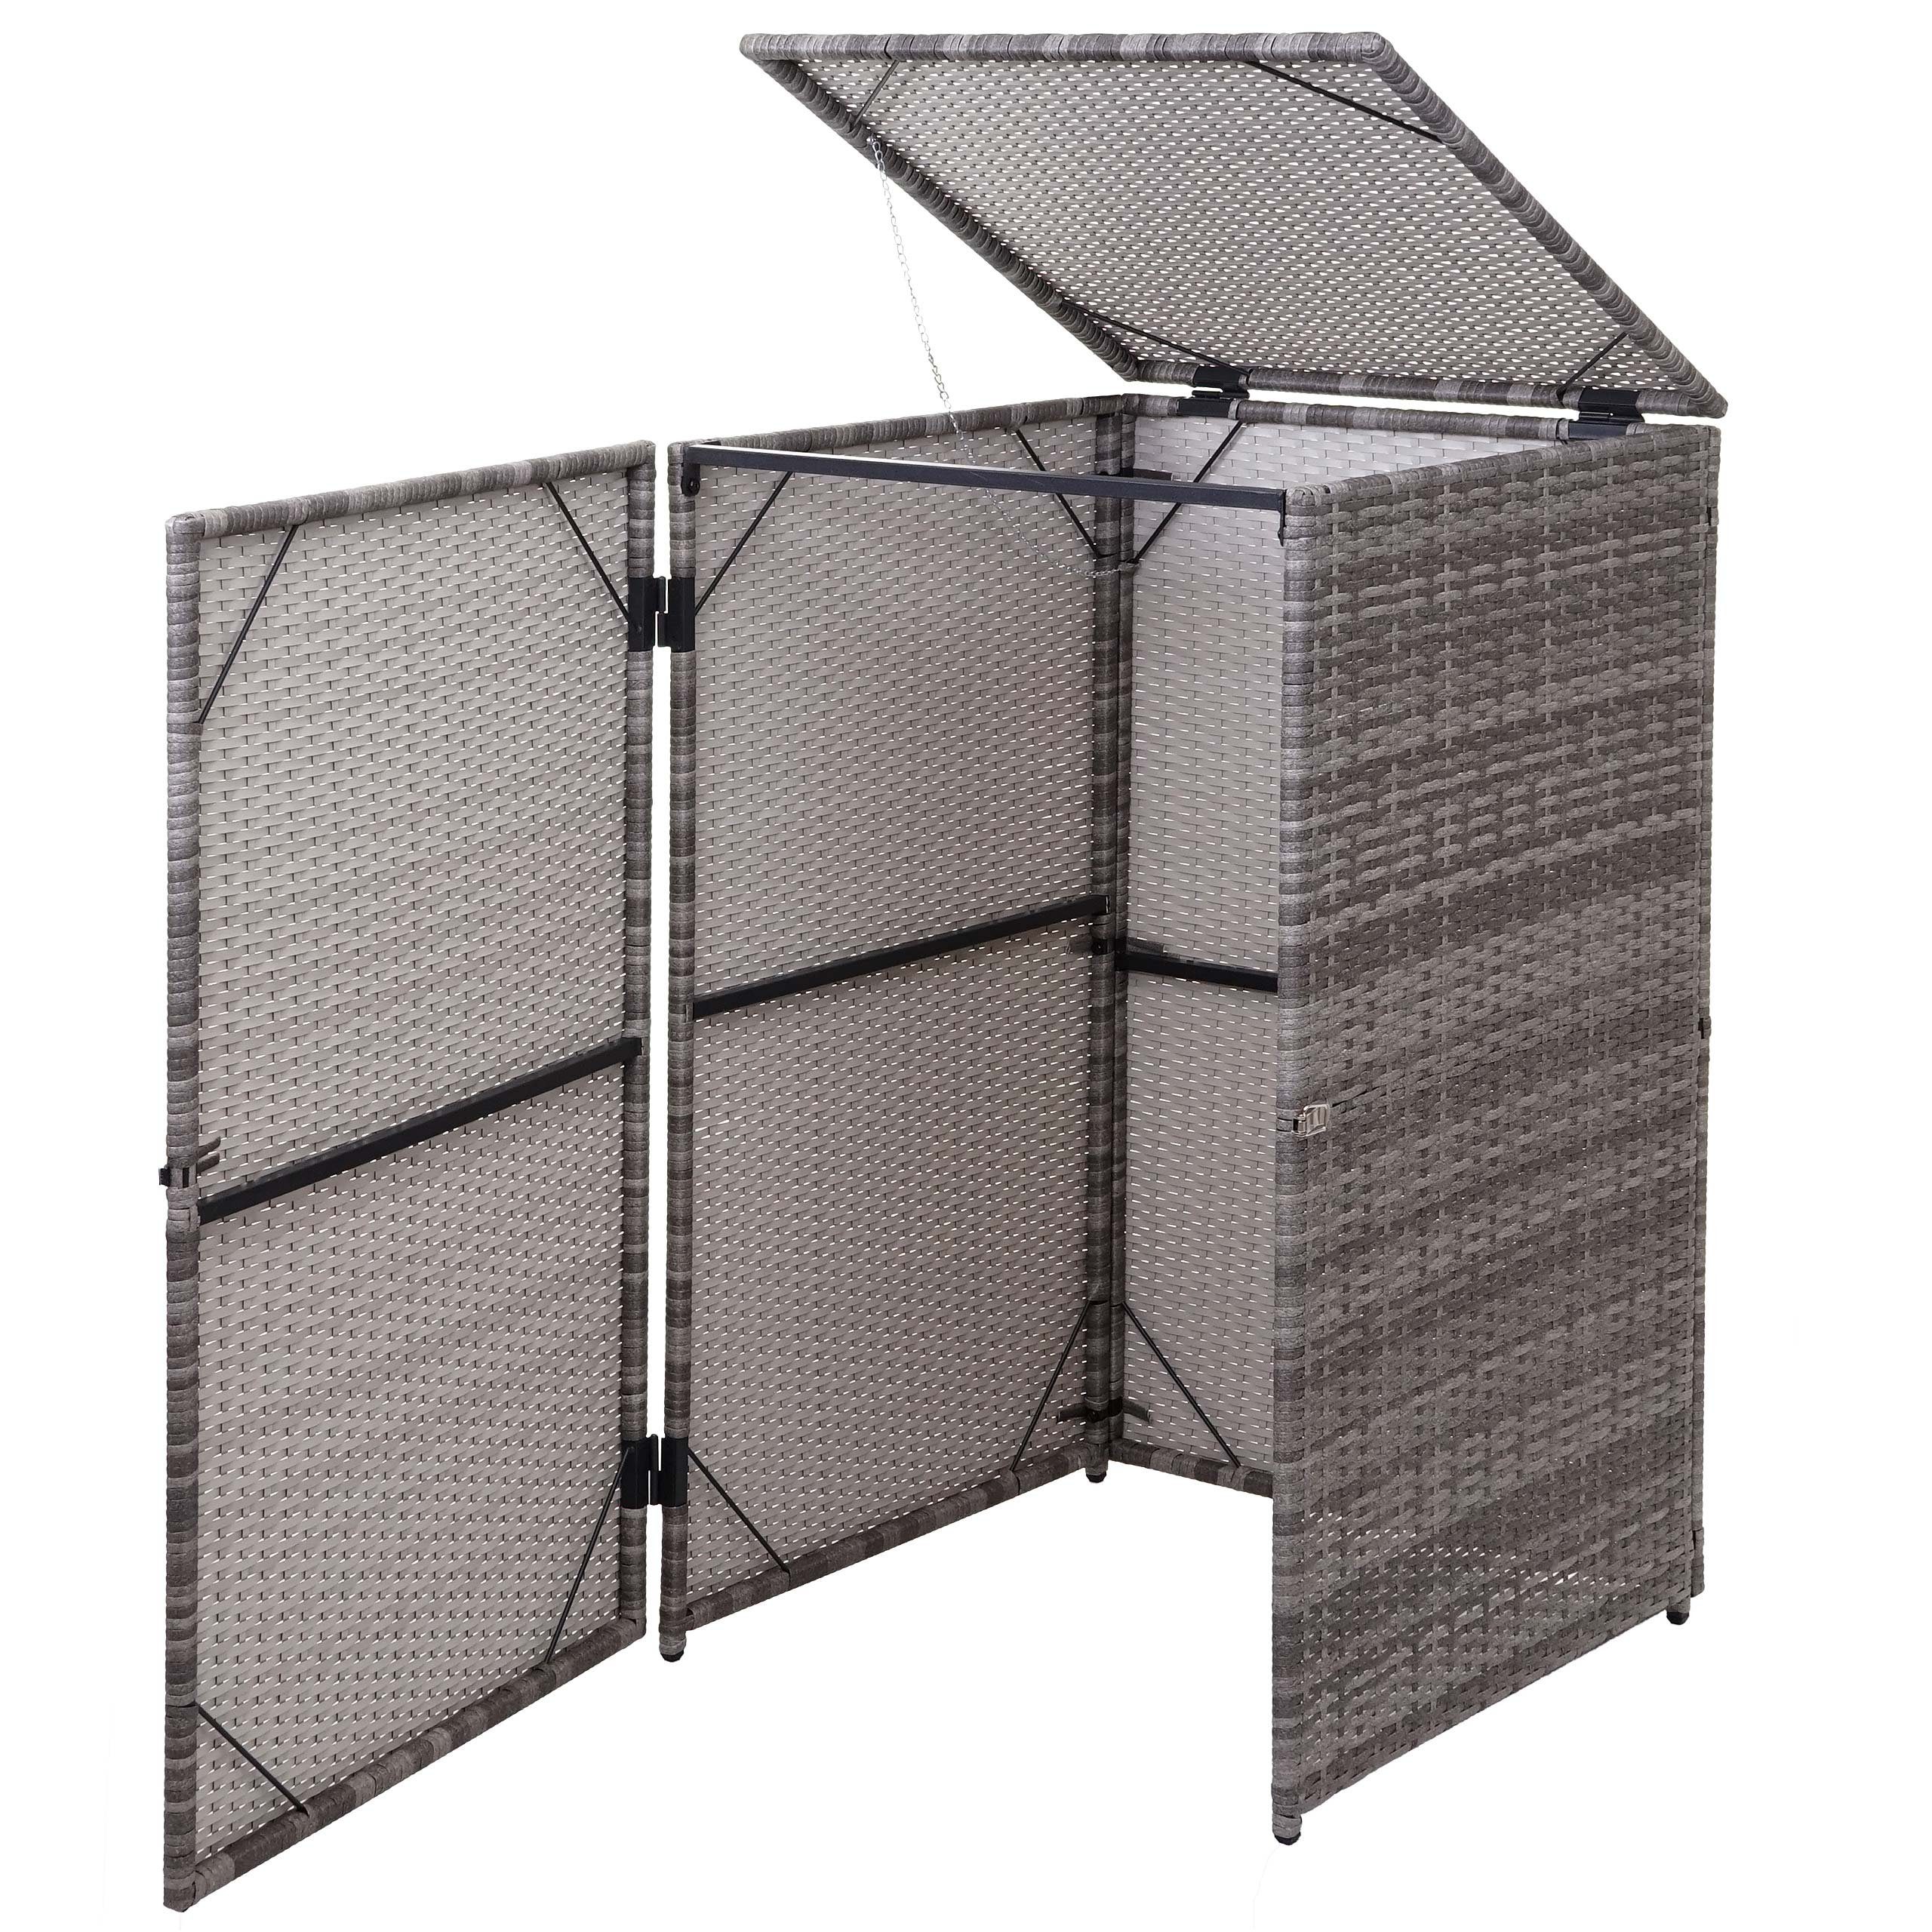 MCW Mülltrennsystem MCW-E25-1x, Garten, Deckel mit Halterung, Klappdeckel inkl. Wind-Sicherung durch Kette grau